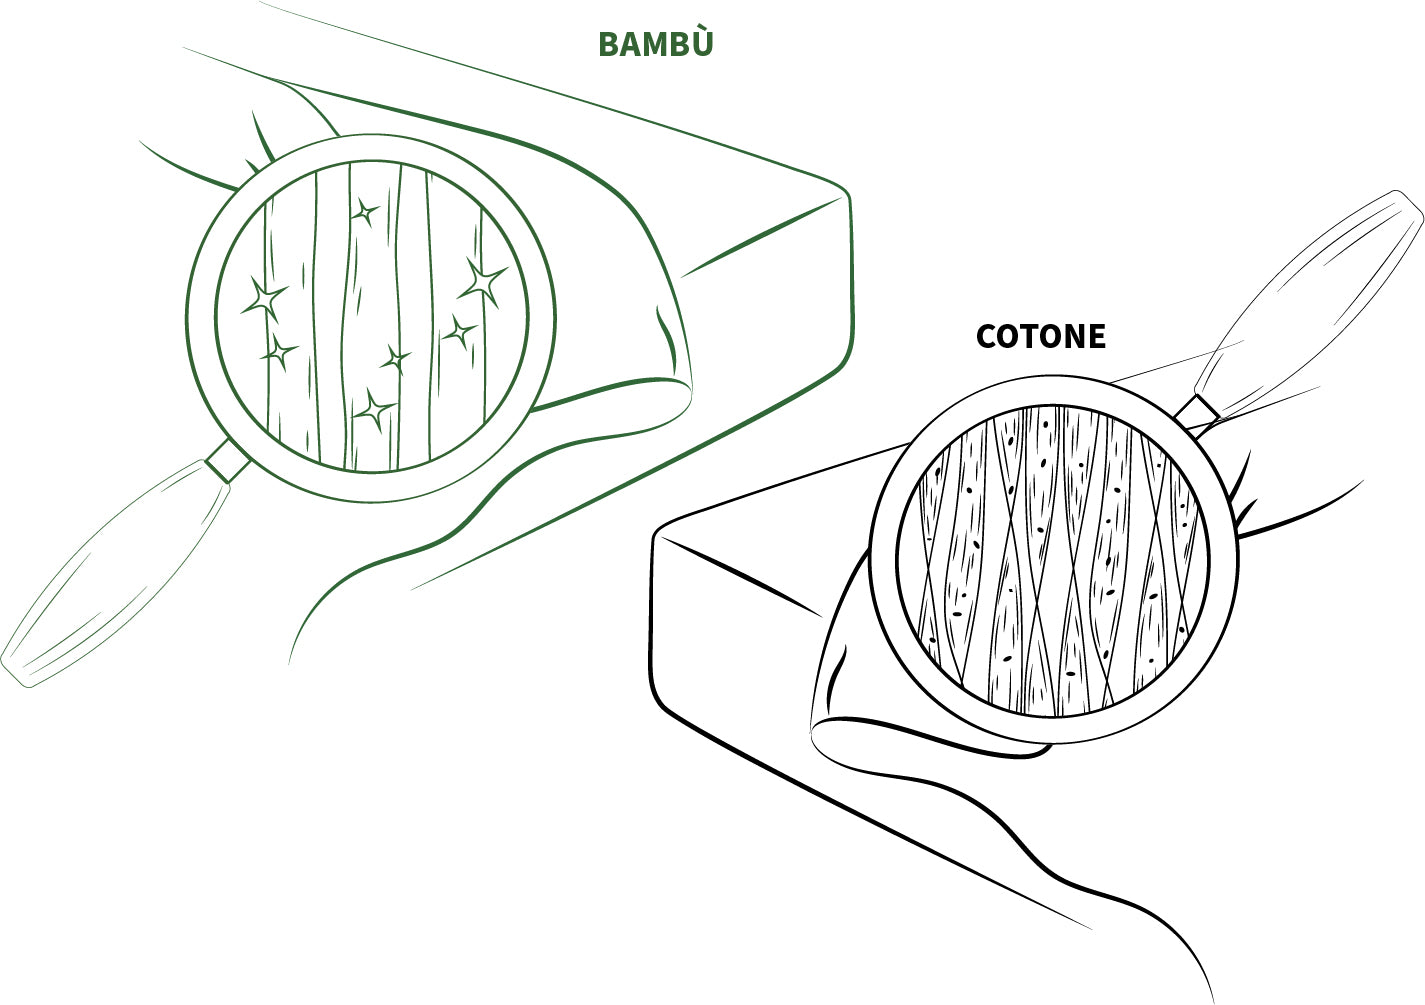 bambaw copripiumino in bambu cotone comparazione